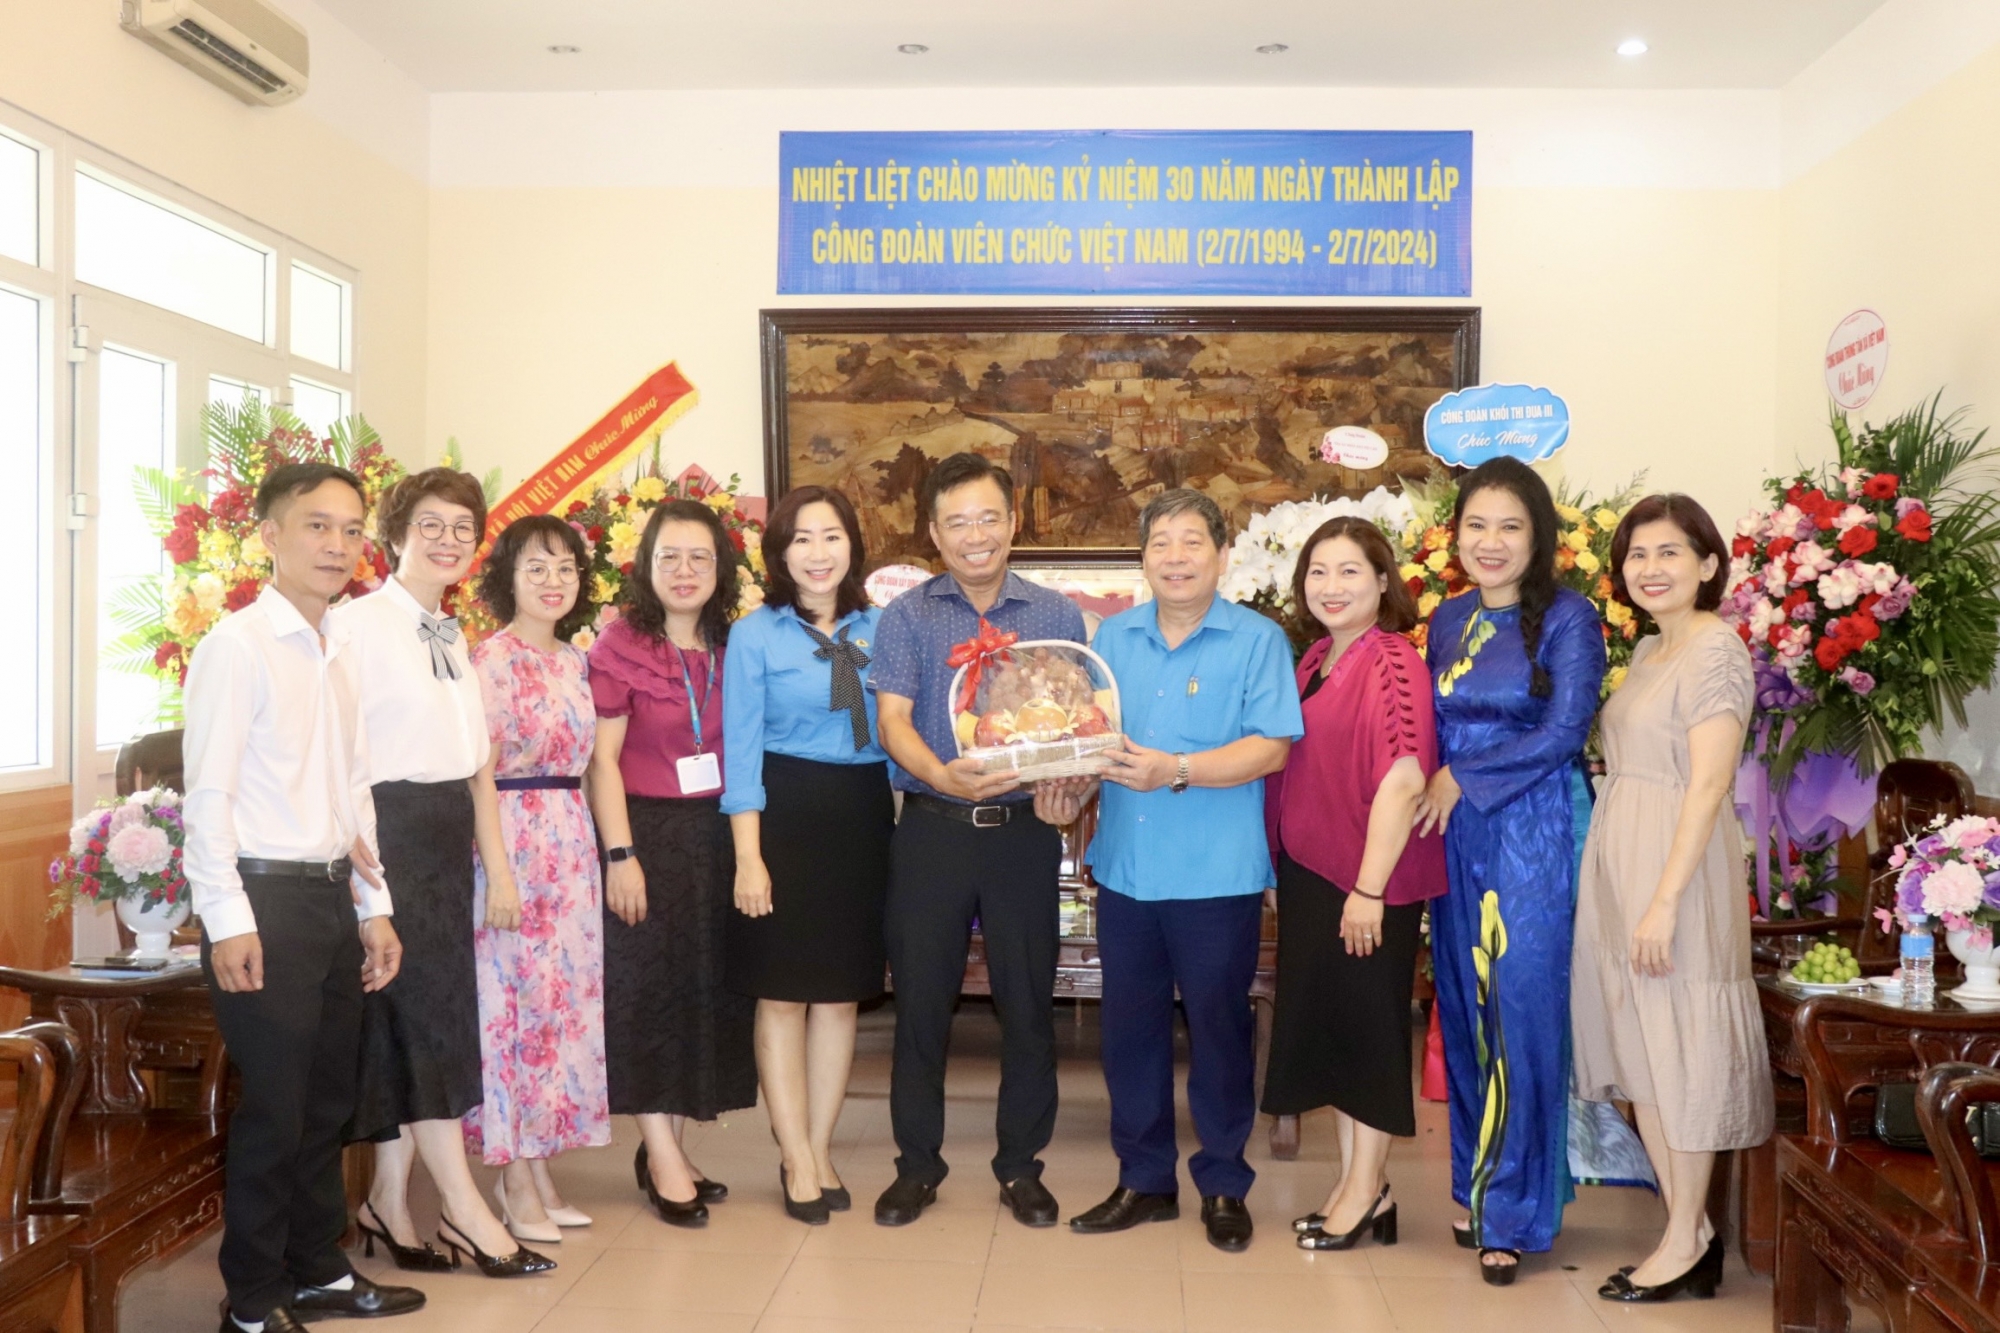 Các đơn vị chúc mừng 30 năm Ngày thành lập Công đoàn Viên chức Việt Nam